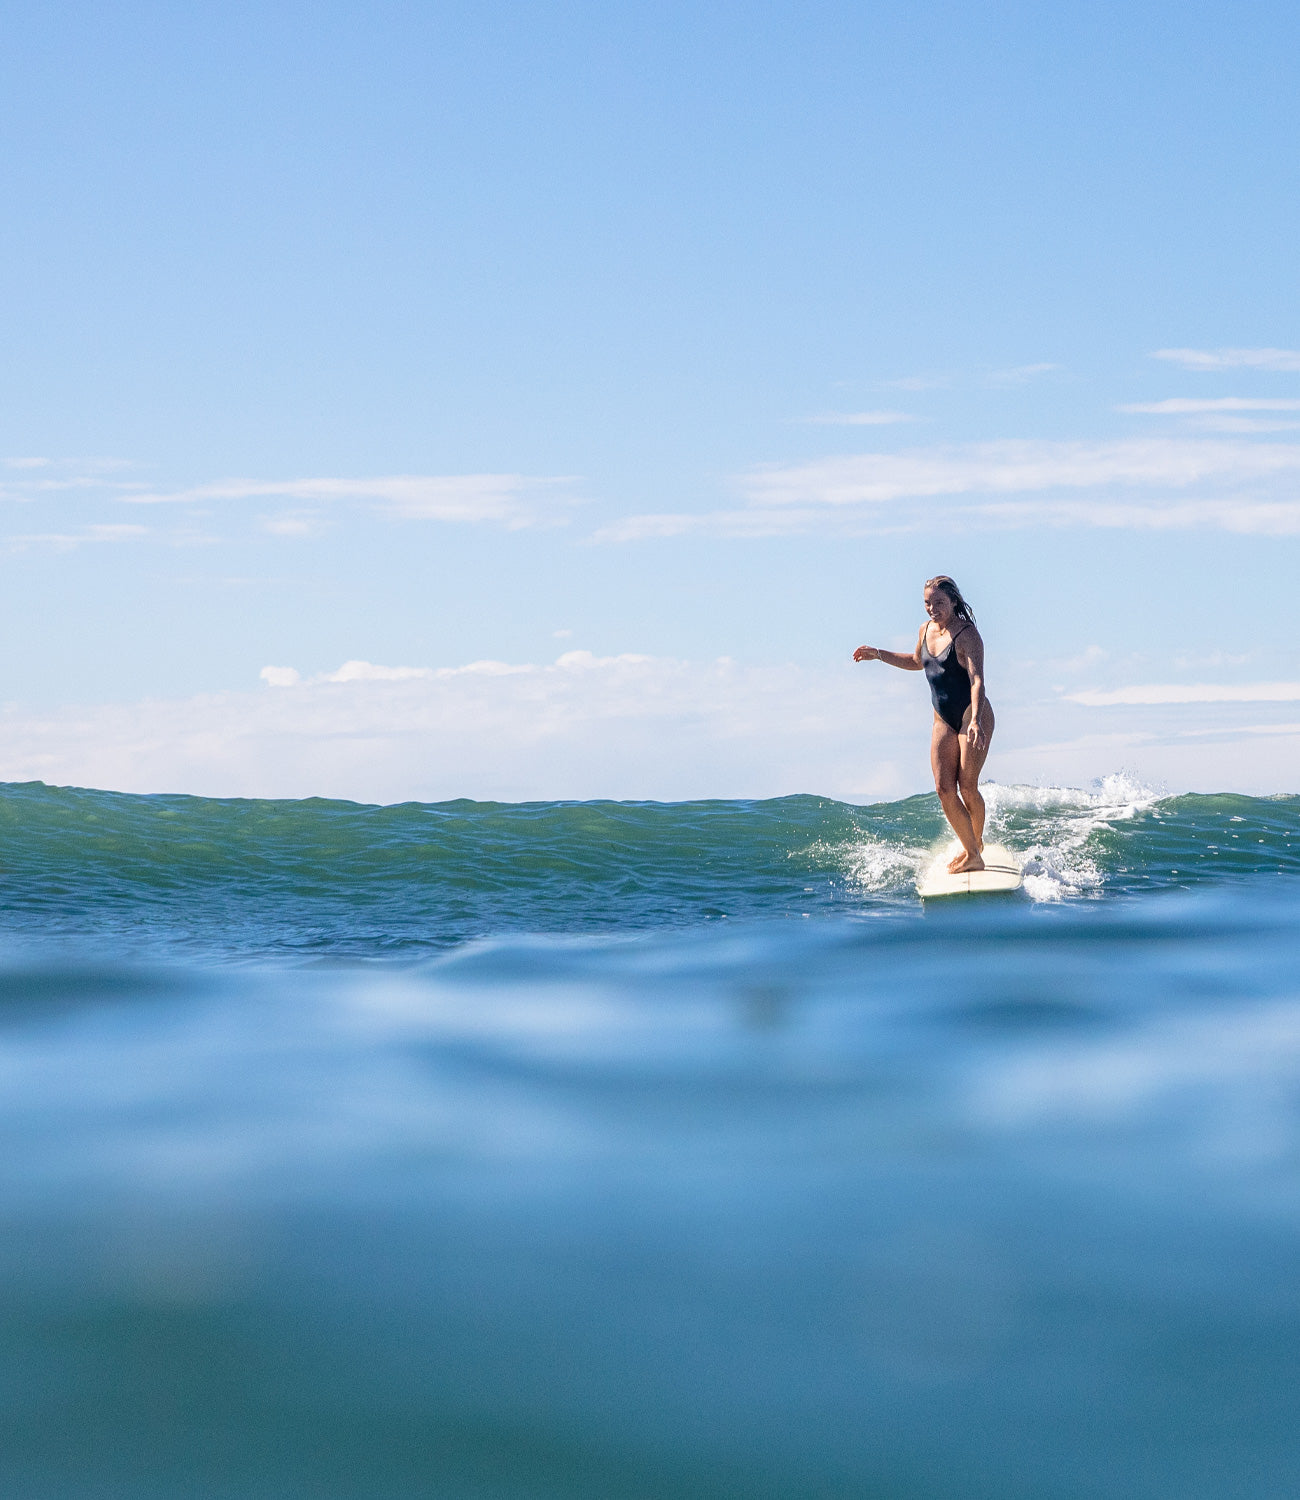 irl surfing on her longboard surfboard in the sea in Australia.